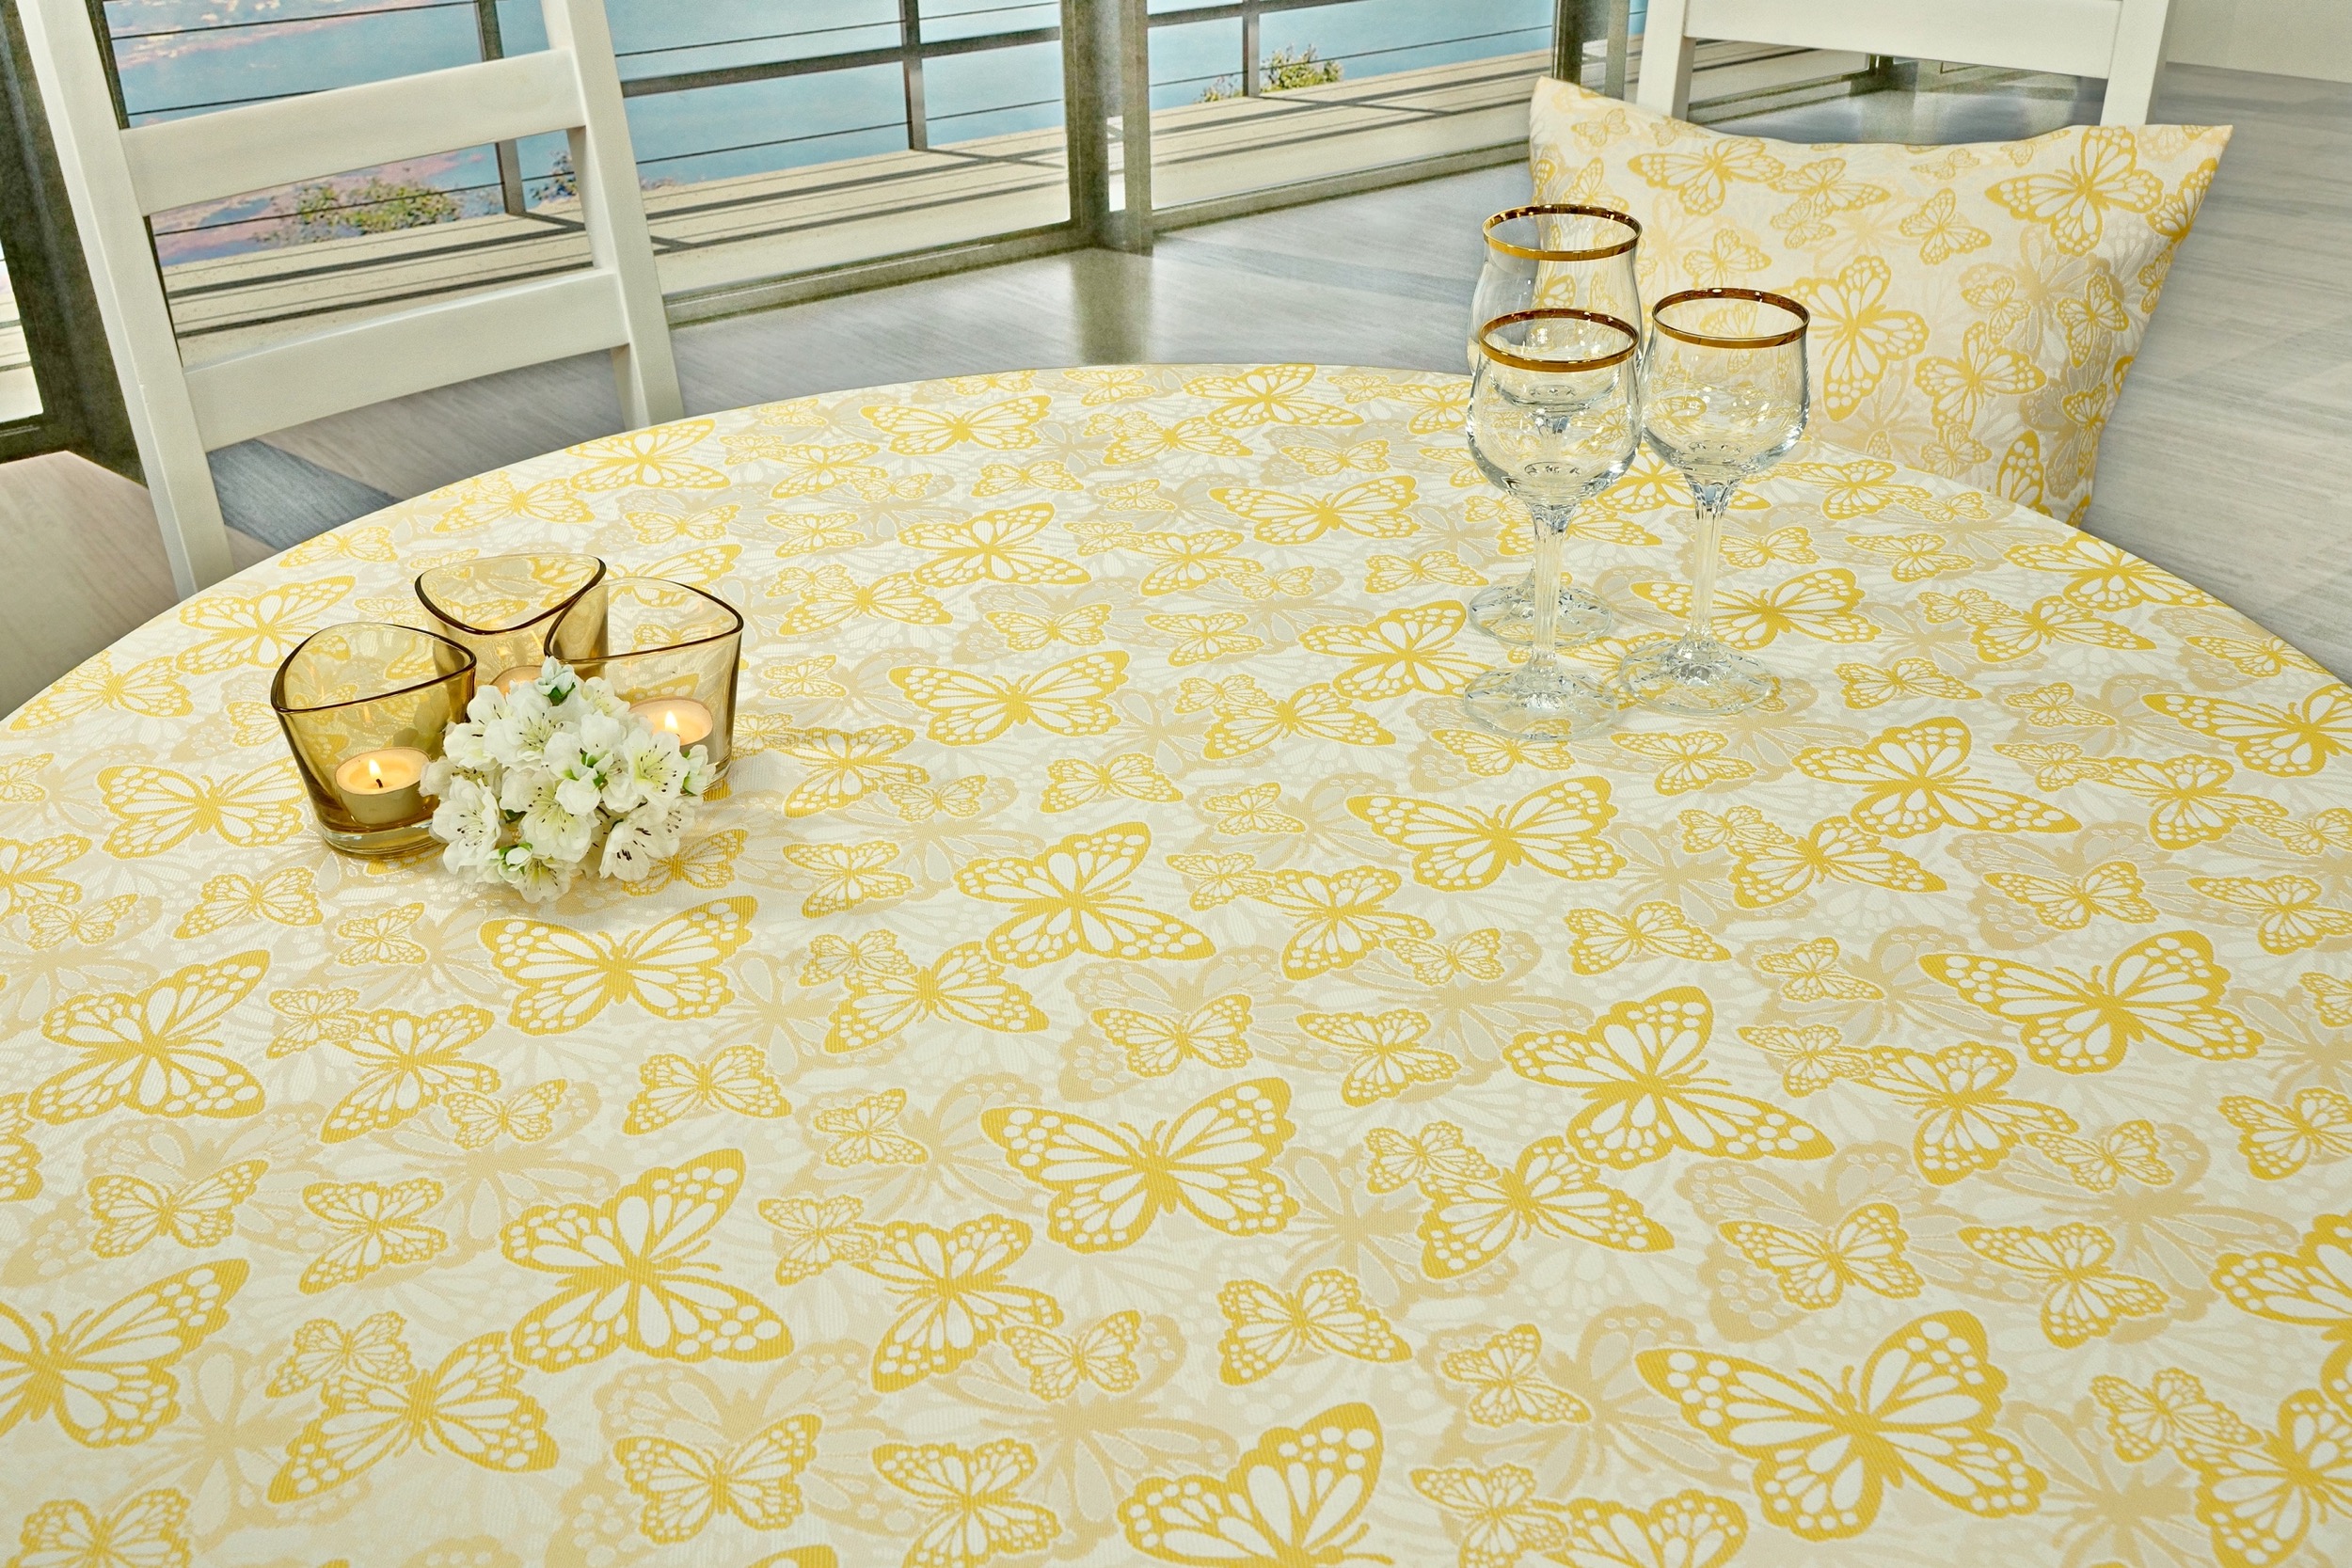 Fleckgeschützte Tischdecke Weiß Gelb Muster Springtime Breite 150 cm OVAL